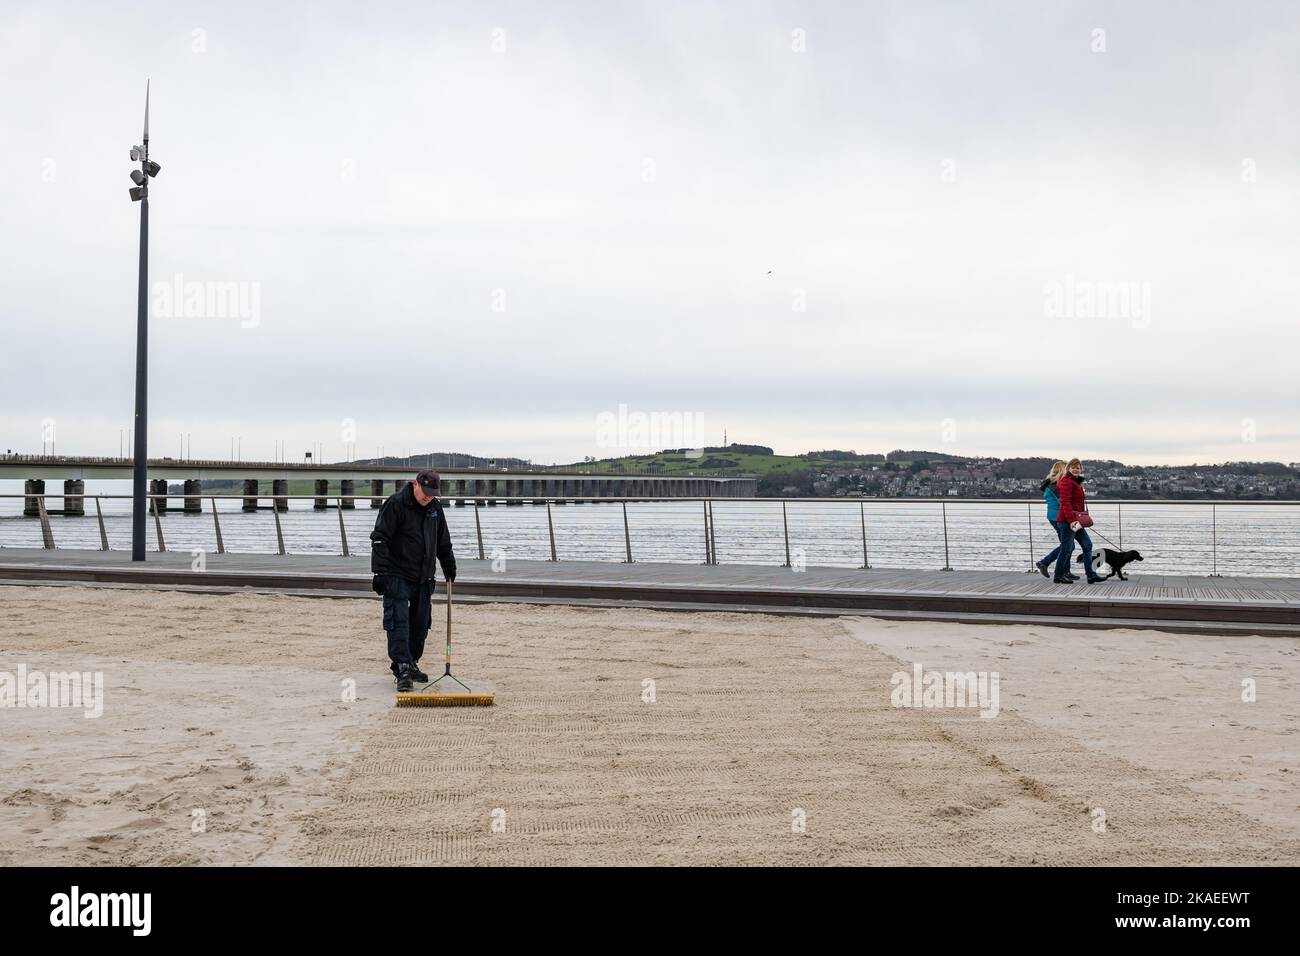 Addetto alla manutenzione che rastrellano sabbia sulla spiaggia urbana, Dundee Waterfront o Esplanade di River Tay, Scotland, UK Foto Stock